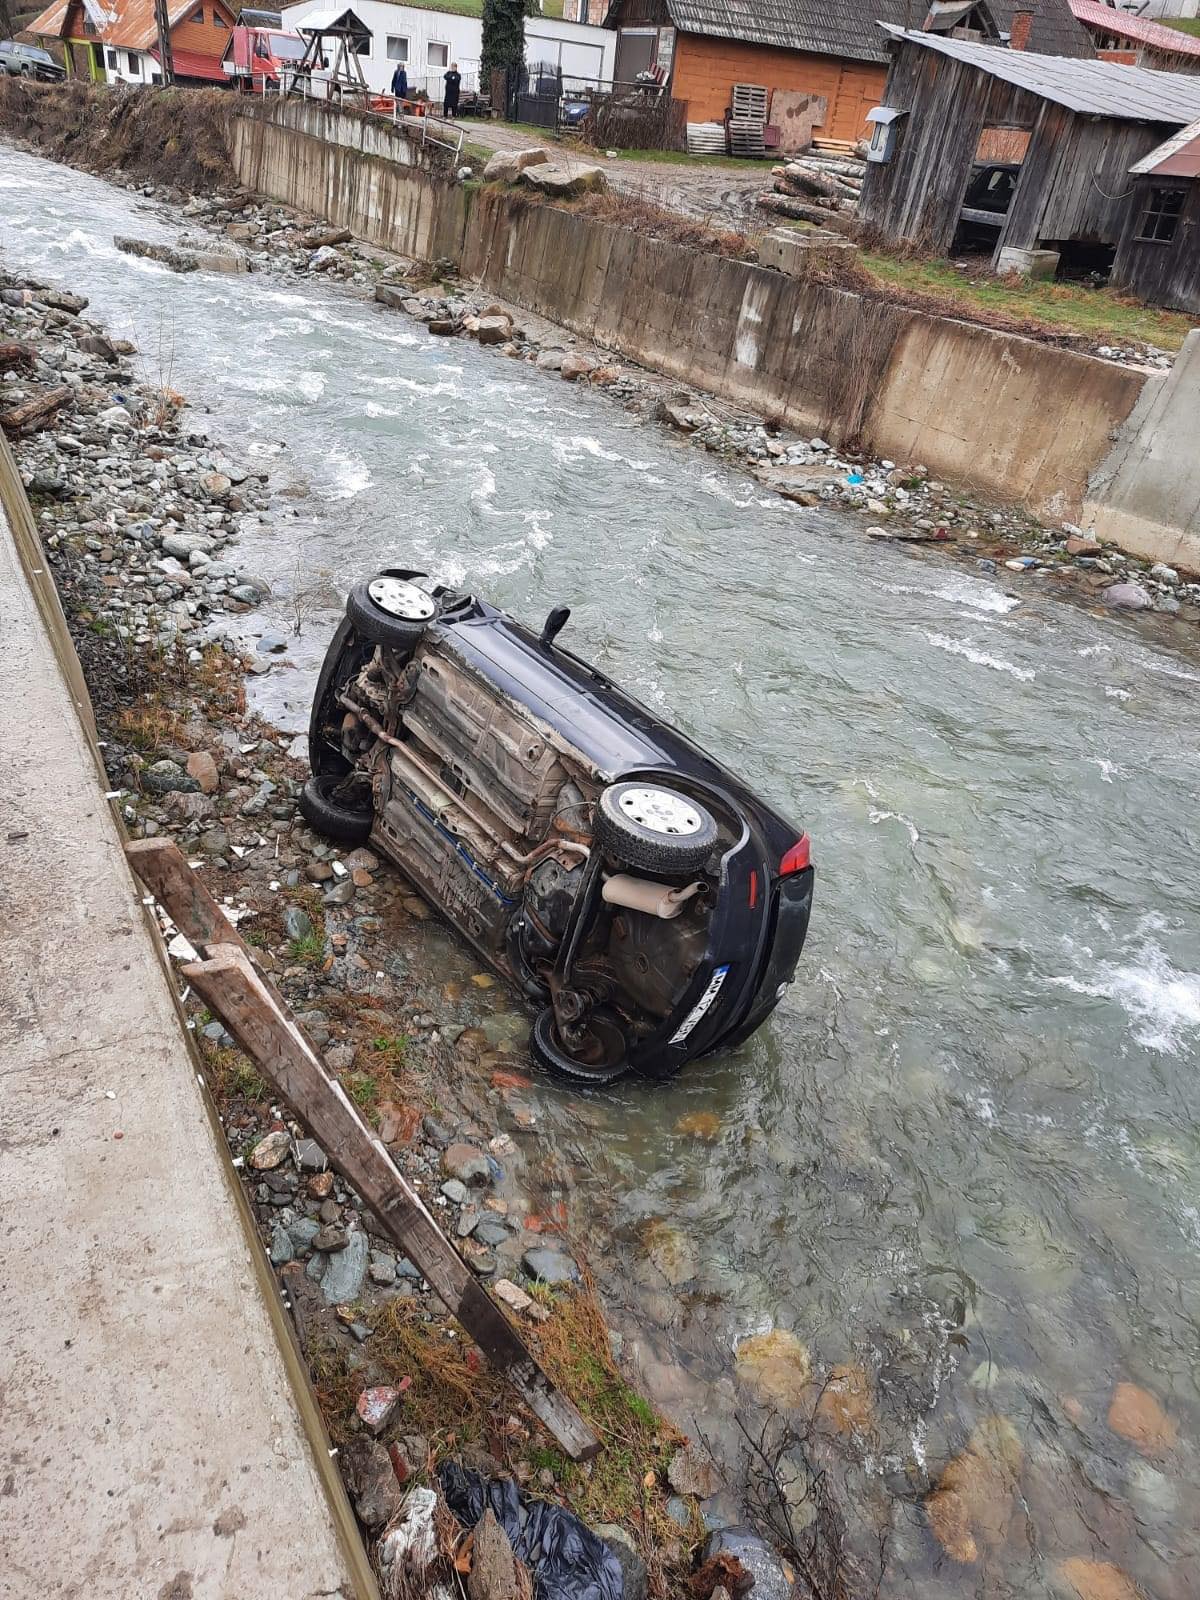 EXCLUSIV VIDEO: O maşină a căzut în râu la Repedea